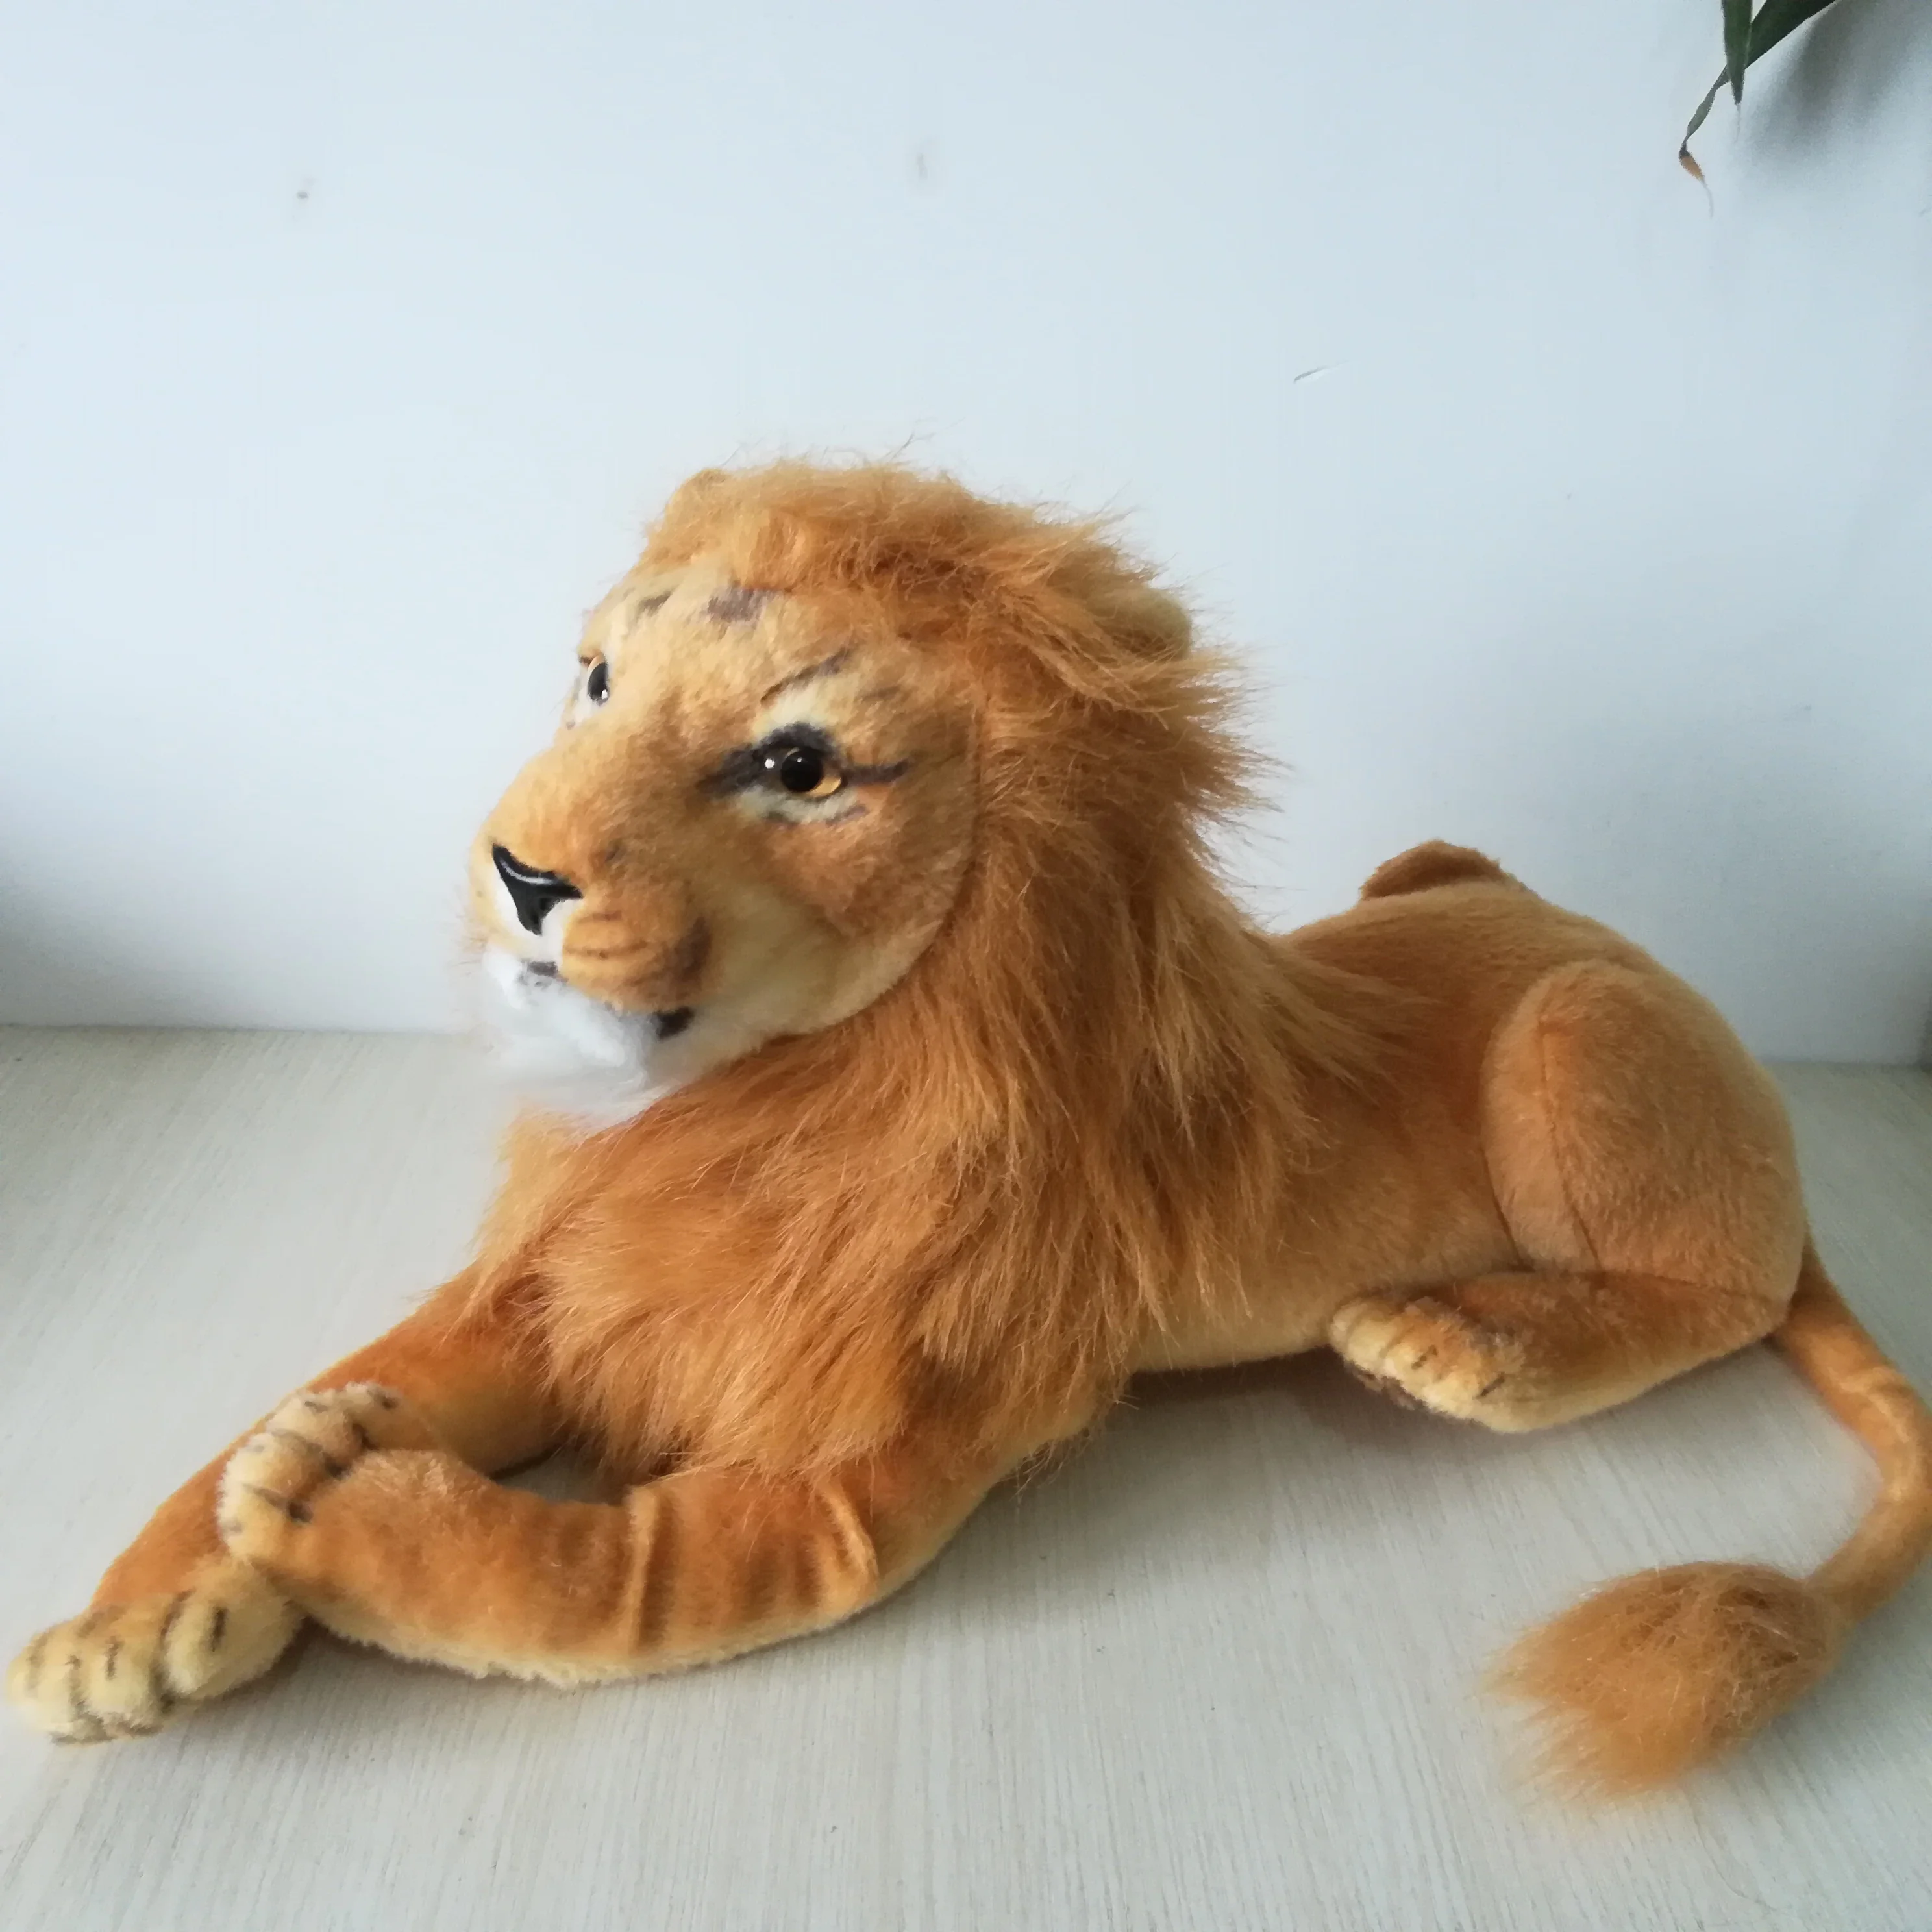 

Реалистичная плюшевая игрушка в виде льва, мягкая кукла в виде льва, подарок на день рождения, около 55 см, s2059